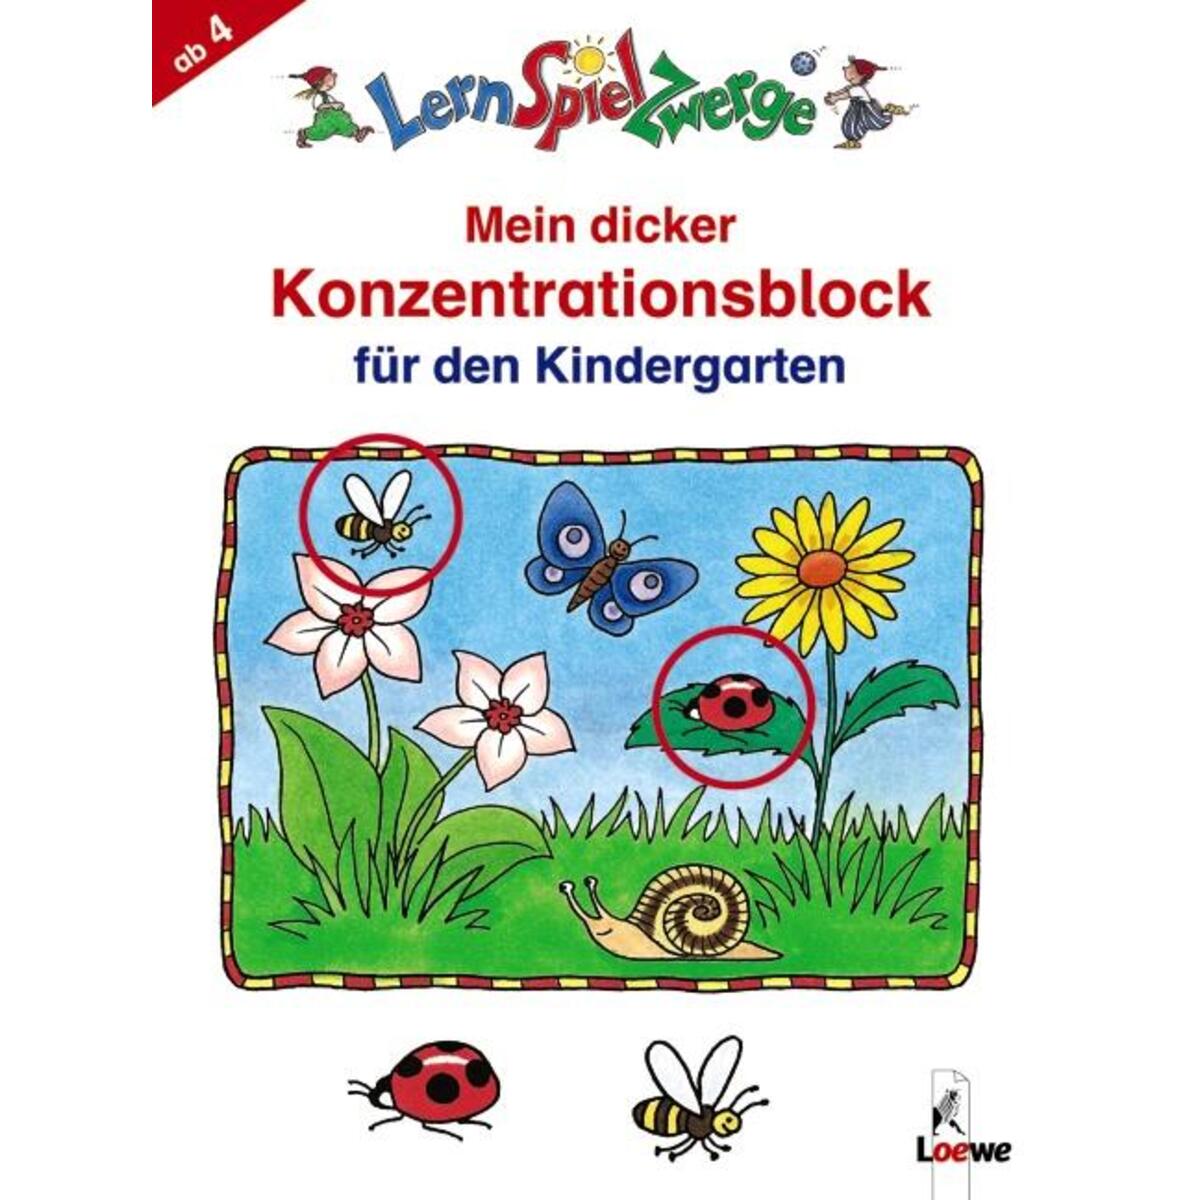 Mein dicker Konzentrationsblock für den Kindergarten von Loewe Verlag GmbH